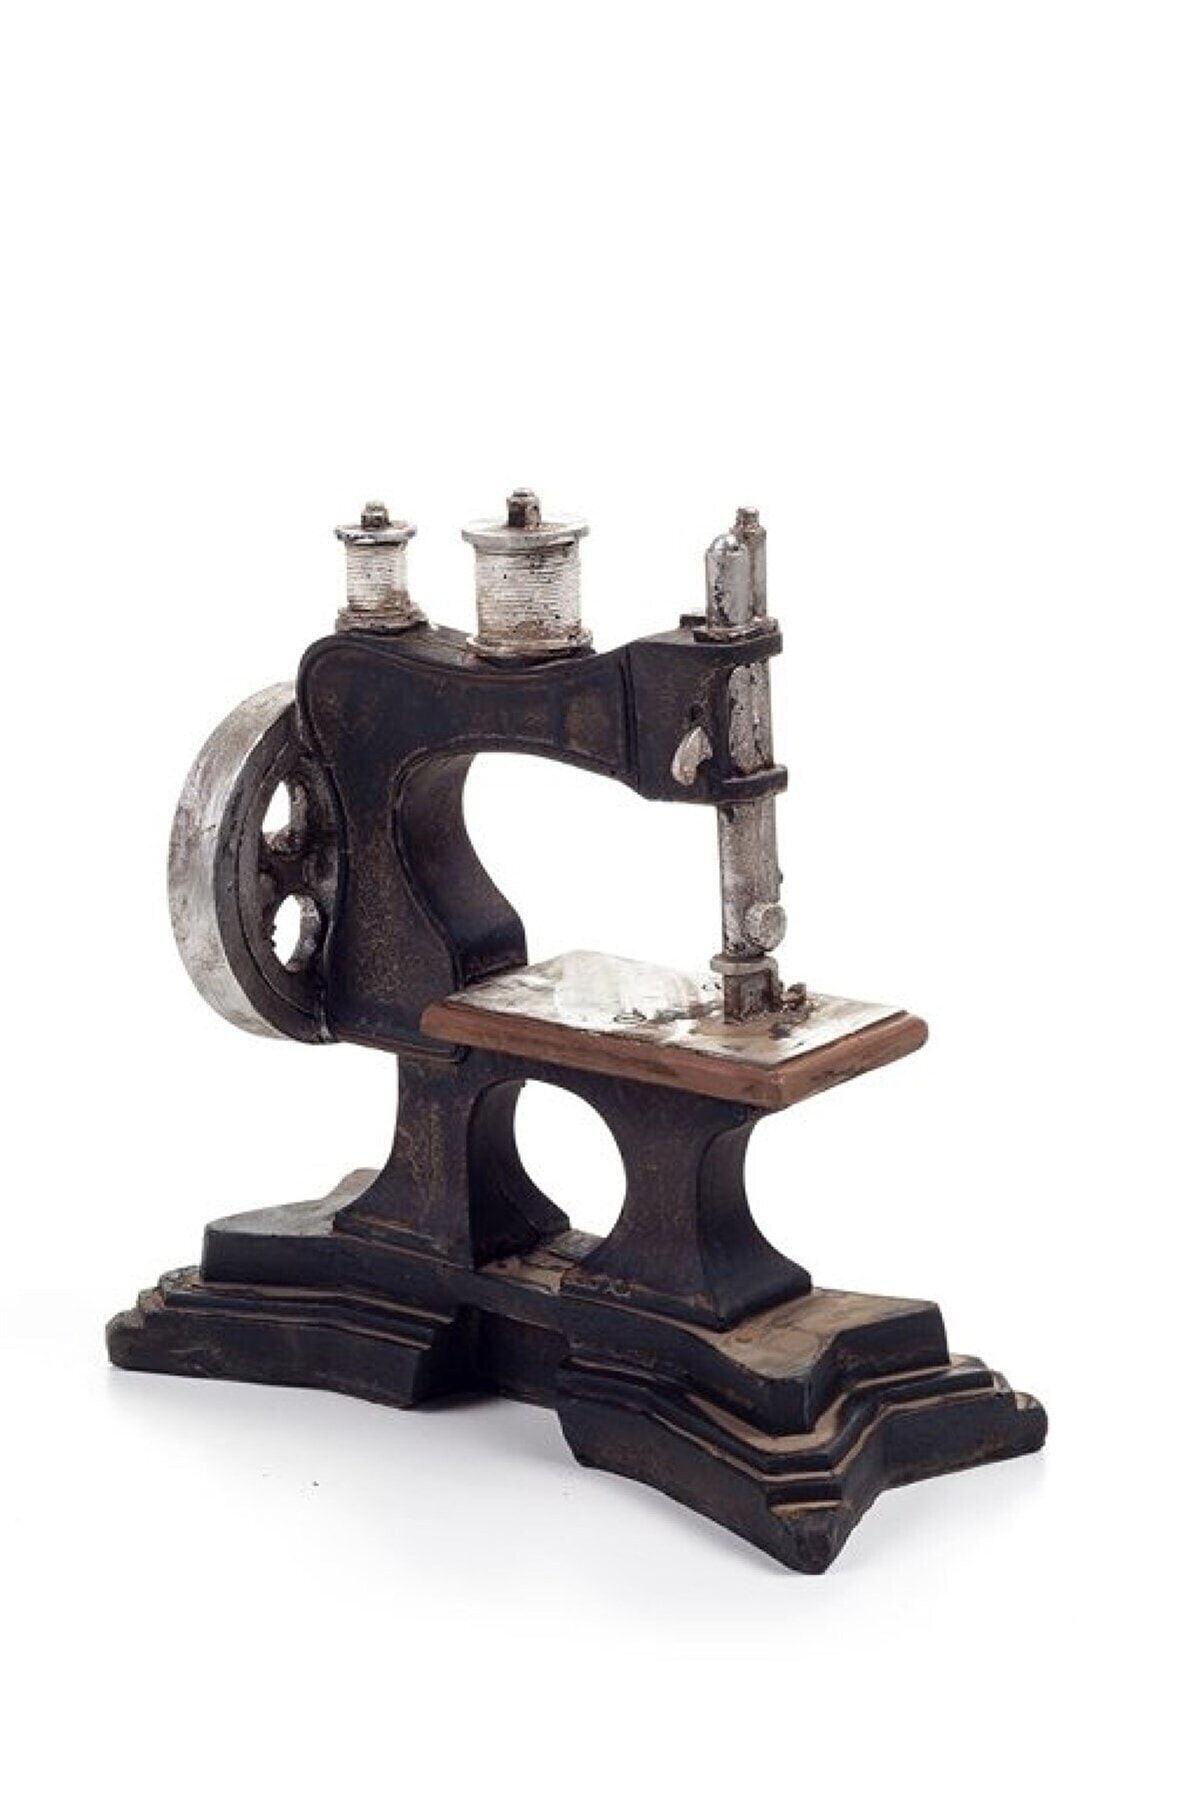 STLIFE Nostaljik Dikiş Makinesi Dekoratif Dikiş Makinesi Biblo Süs Eşyası Antika Dikiş Makinesi